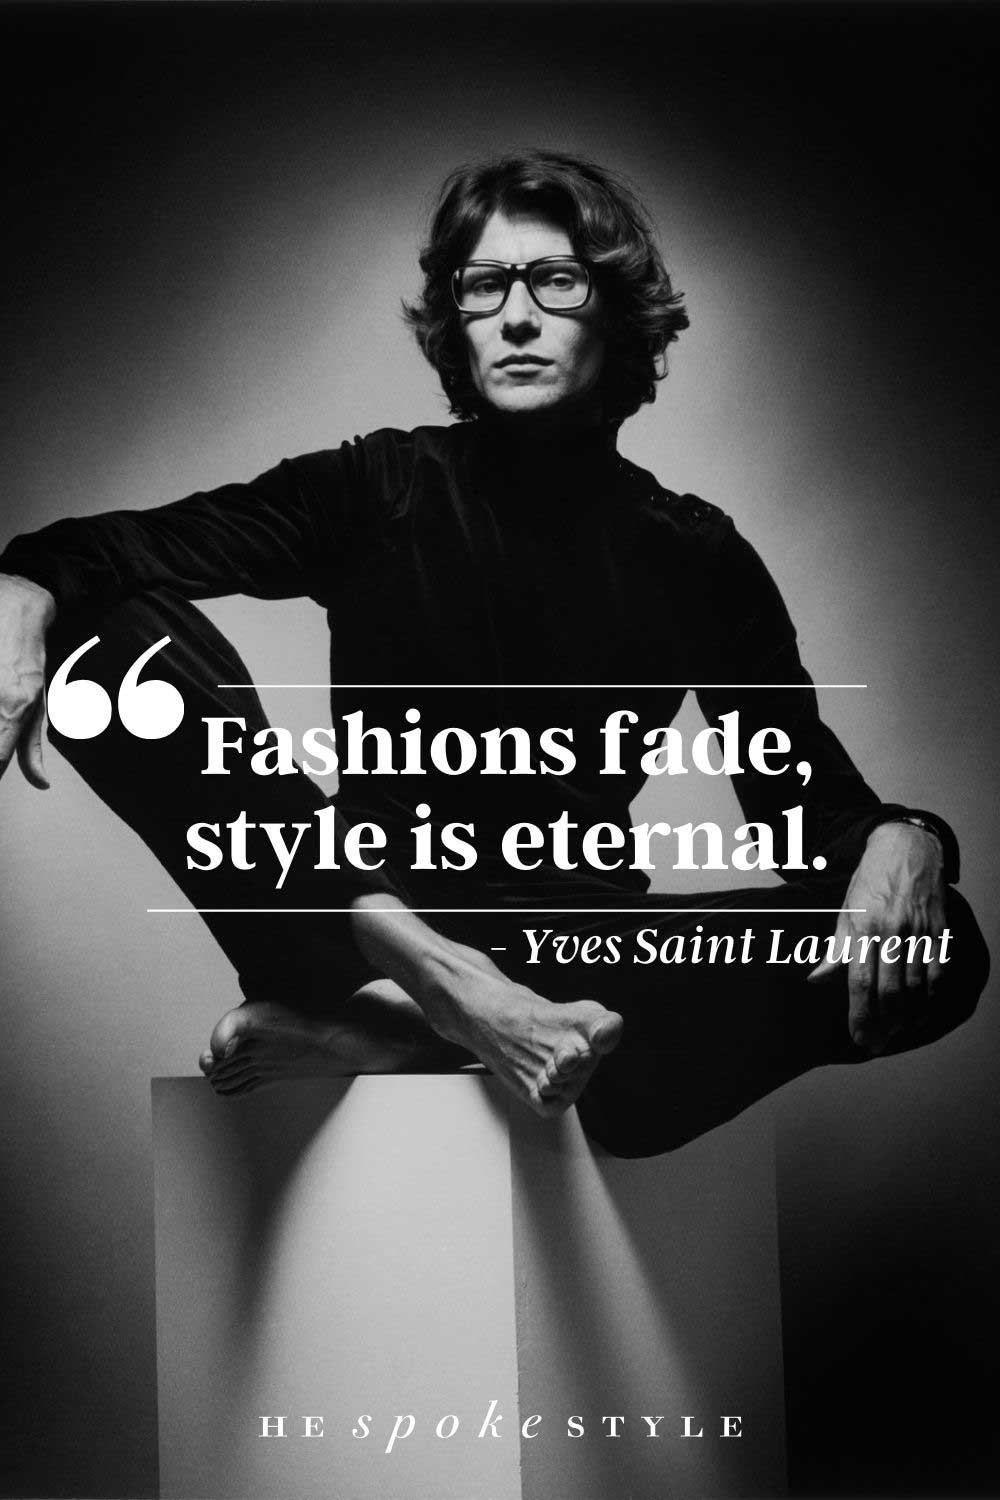 Yves Saint Laurent famous fashion quote 